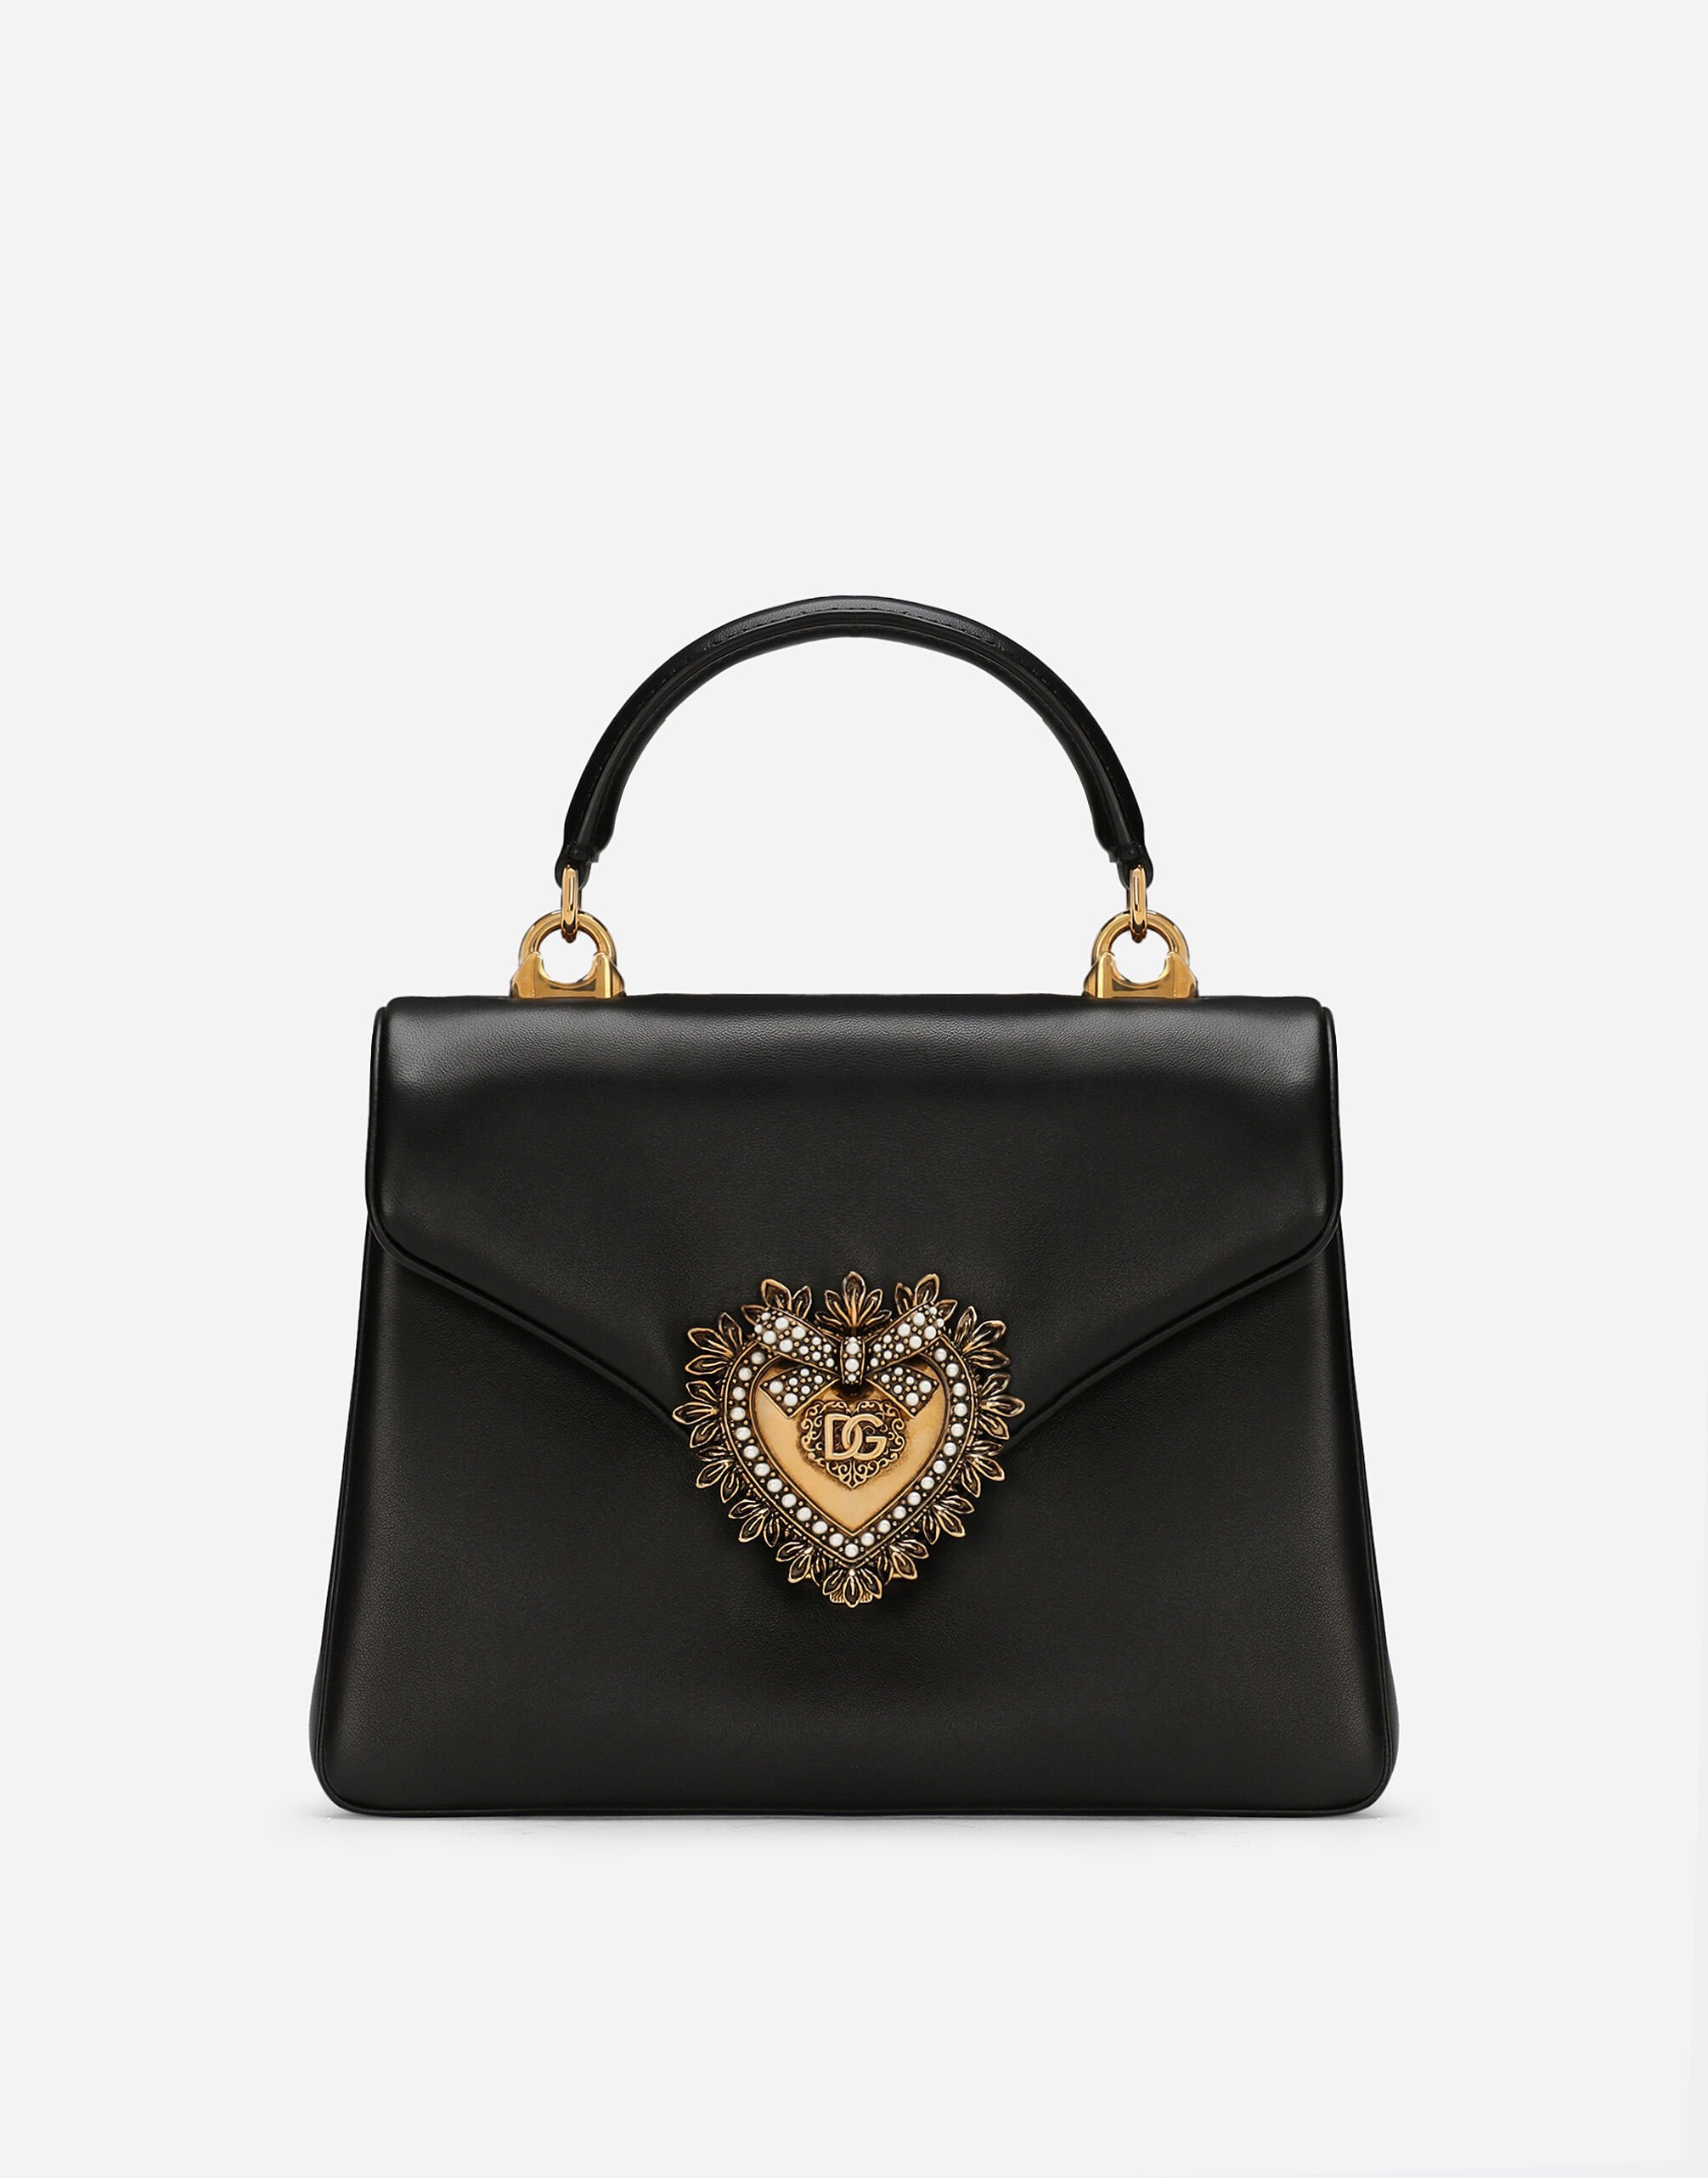 Dolce & Gabbana Devotion handbag Orange BB6711AV893